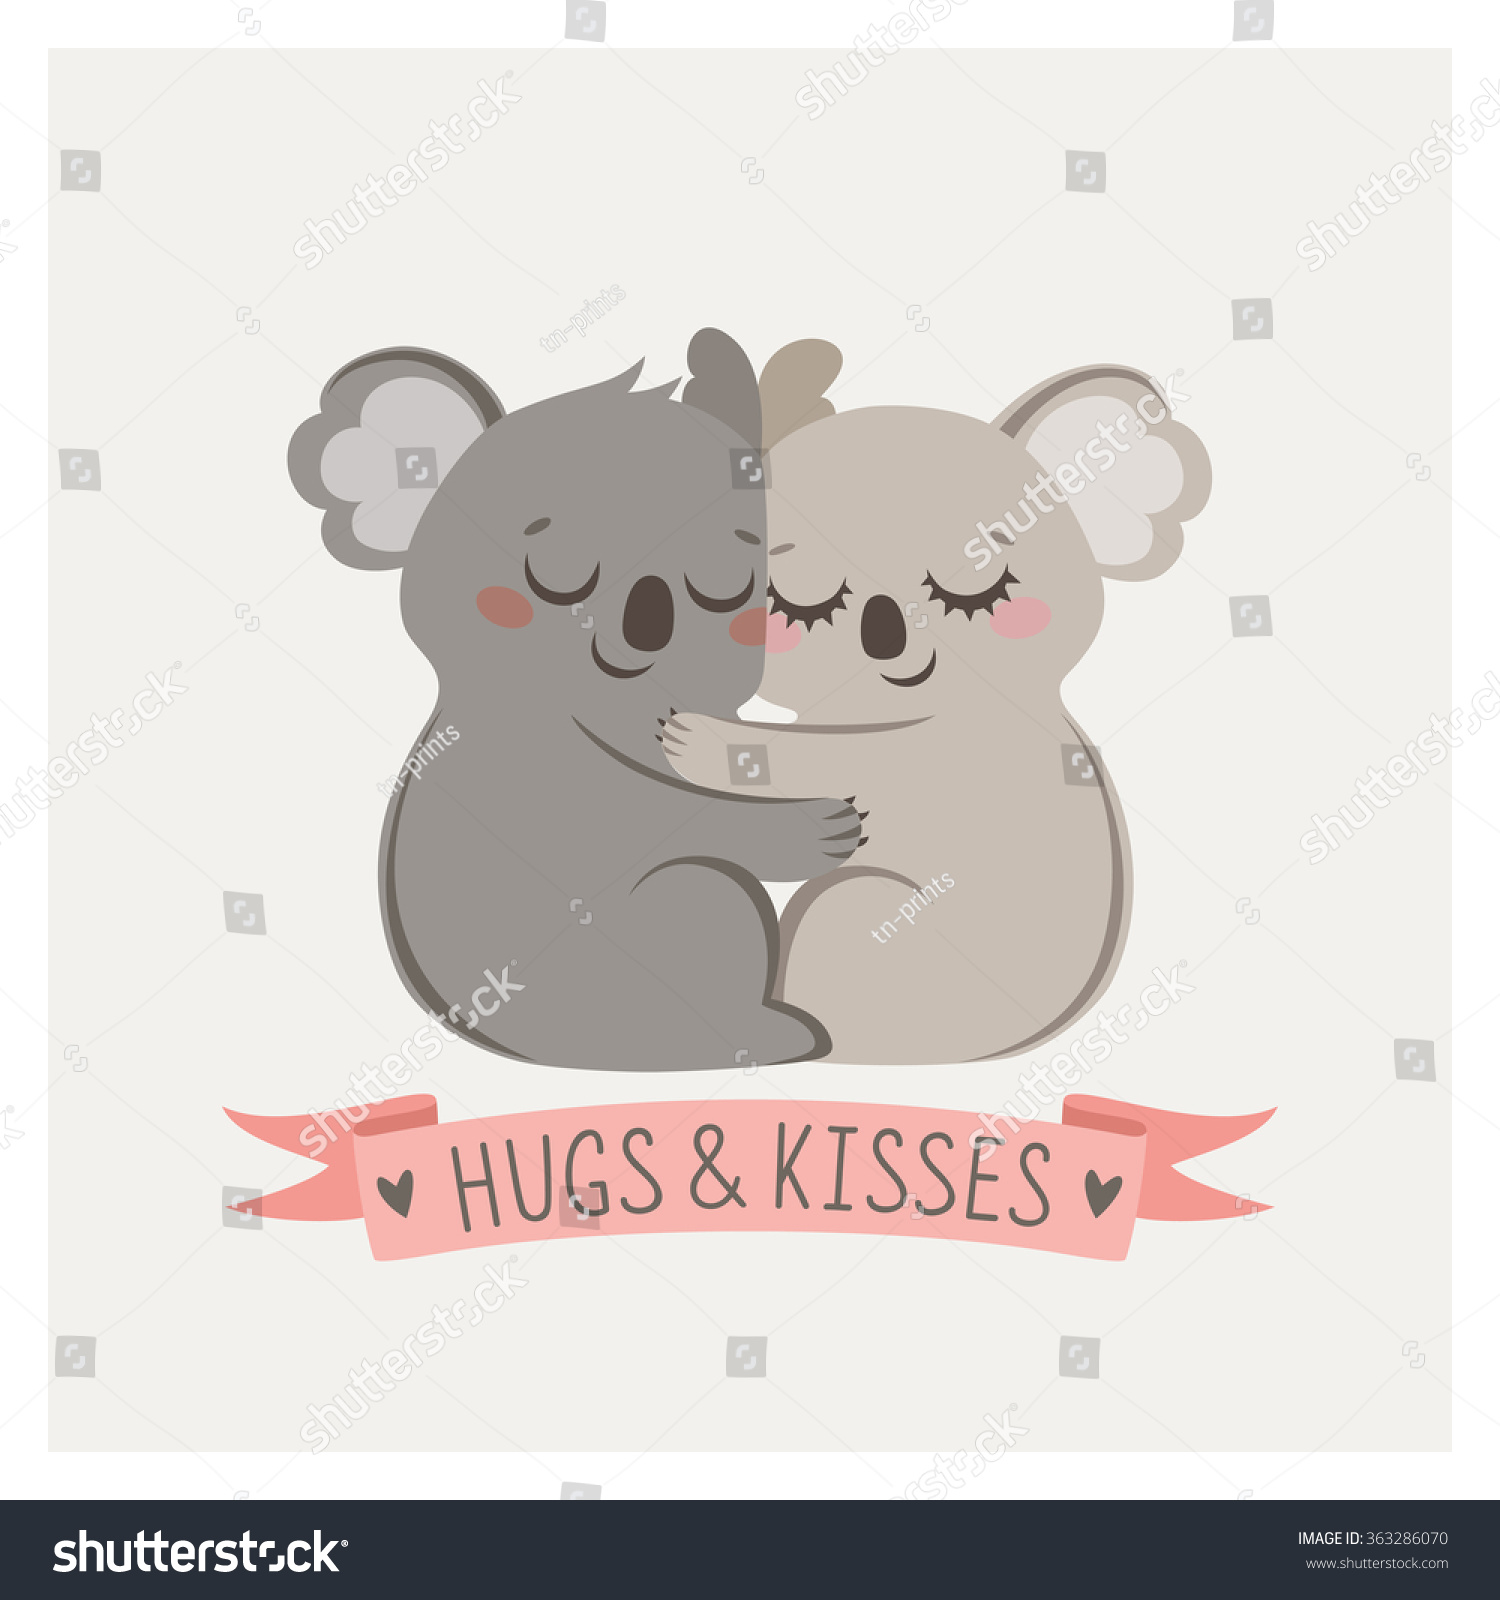 Carte Mignonne Avec Couple D Amoureux Koalas Image Vectorielle De Stock Libre De Droits